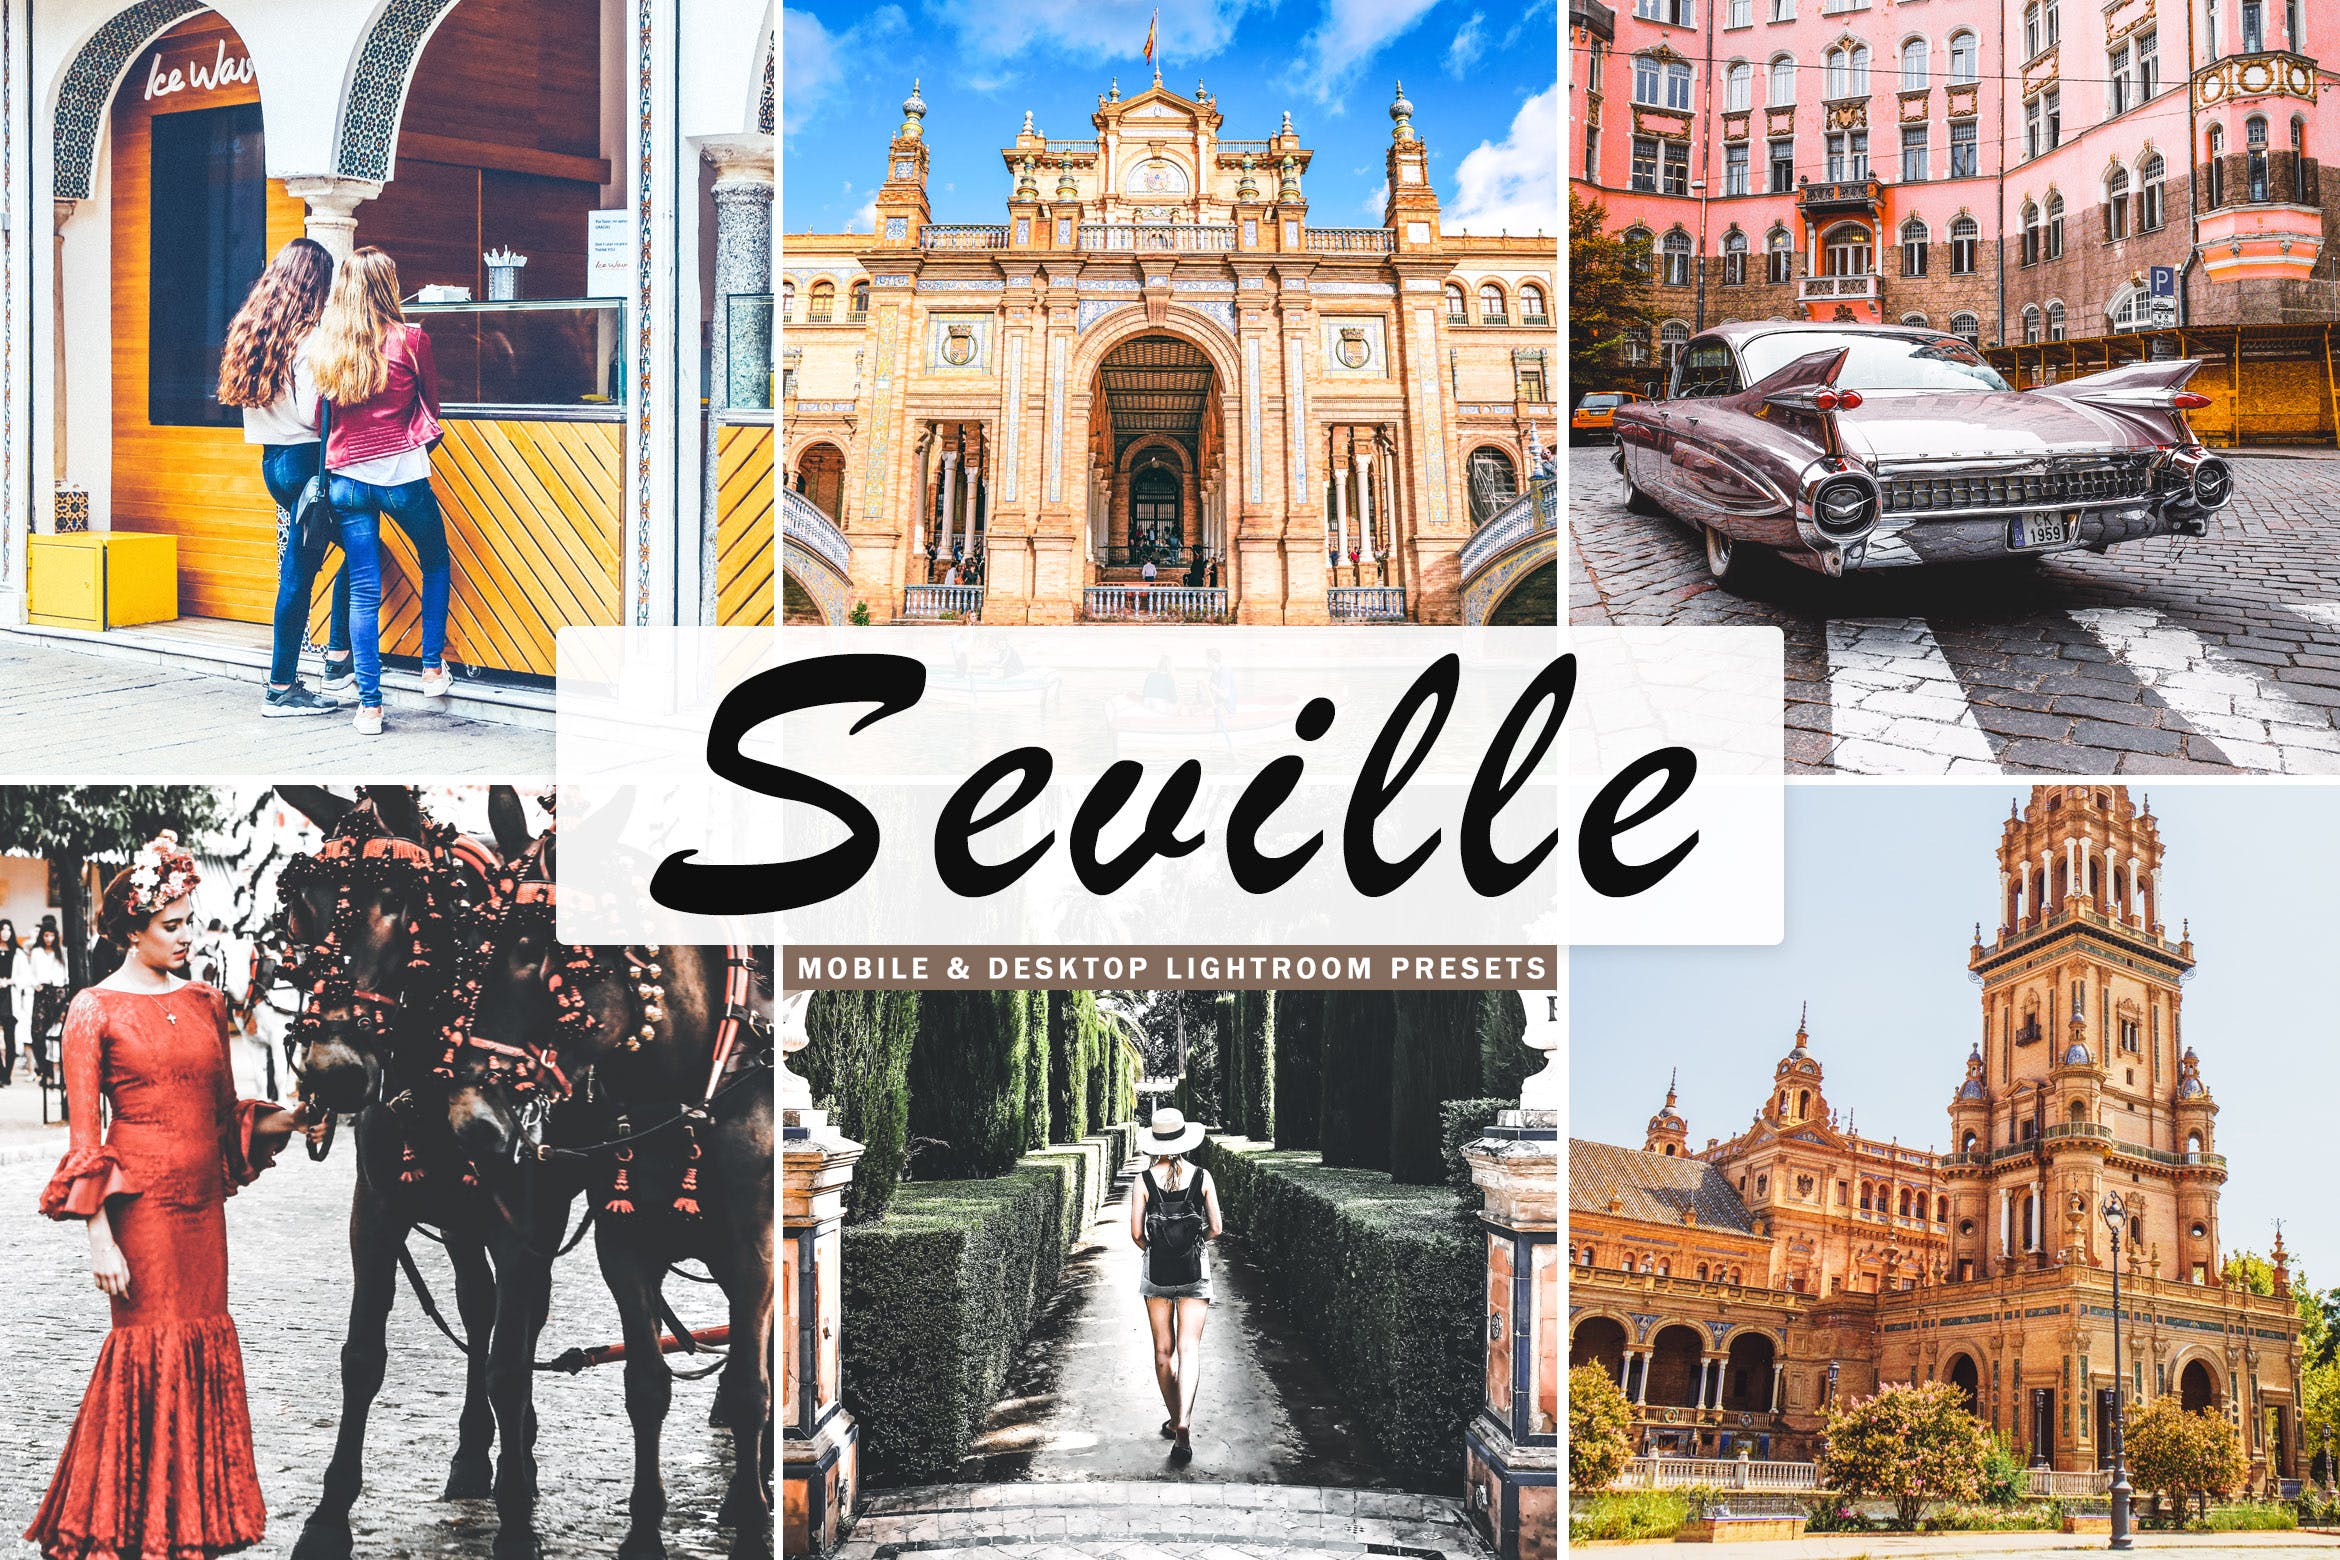 塞维利亚旅行摄影后期加工亿图网易图库精选LR预设 Seville Mobile & Desktop Lightroom Presets插图